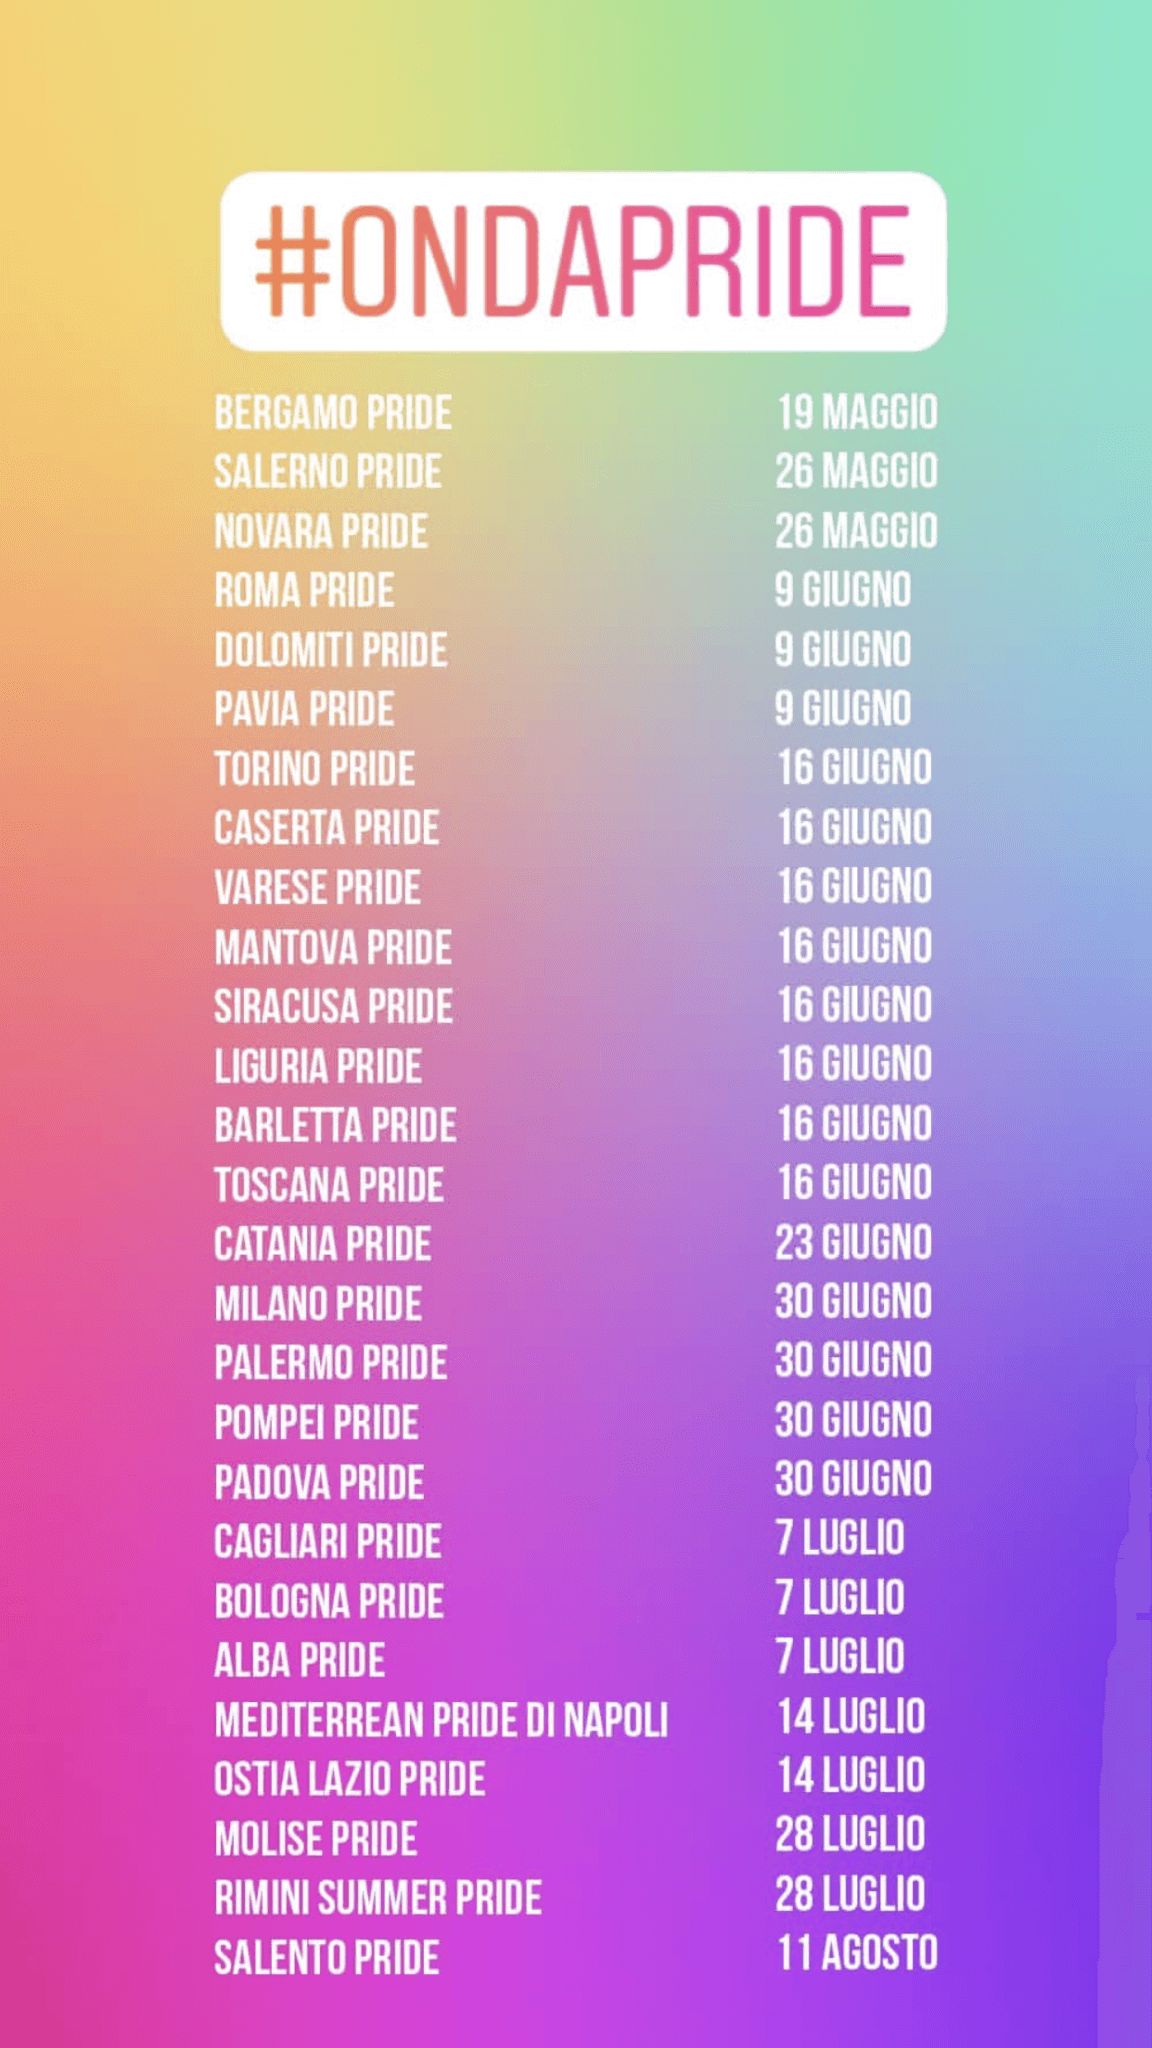 Onda Pride 2018, Bergamo dà il via alla festa - 28 pride in 84 giorni - IMG 7269 - Gay.it